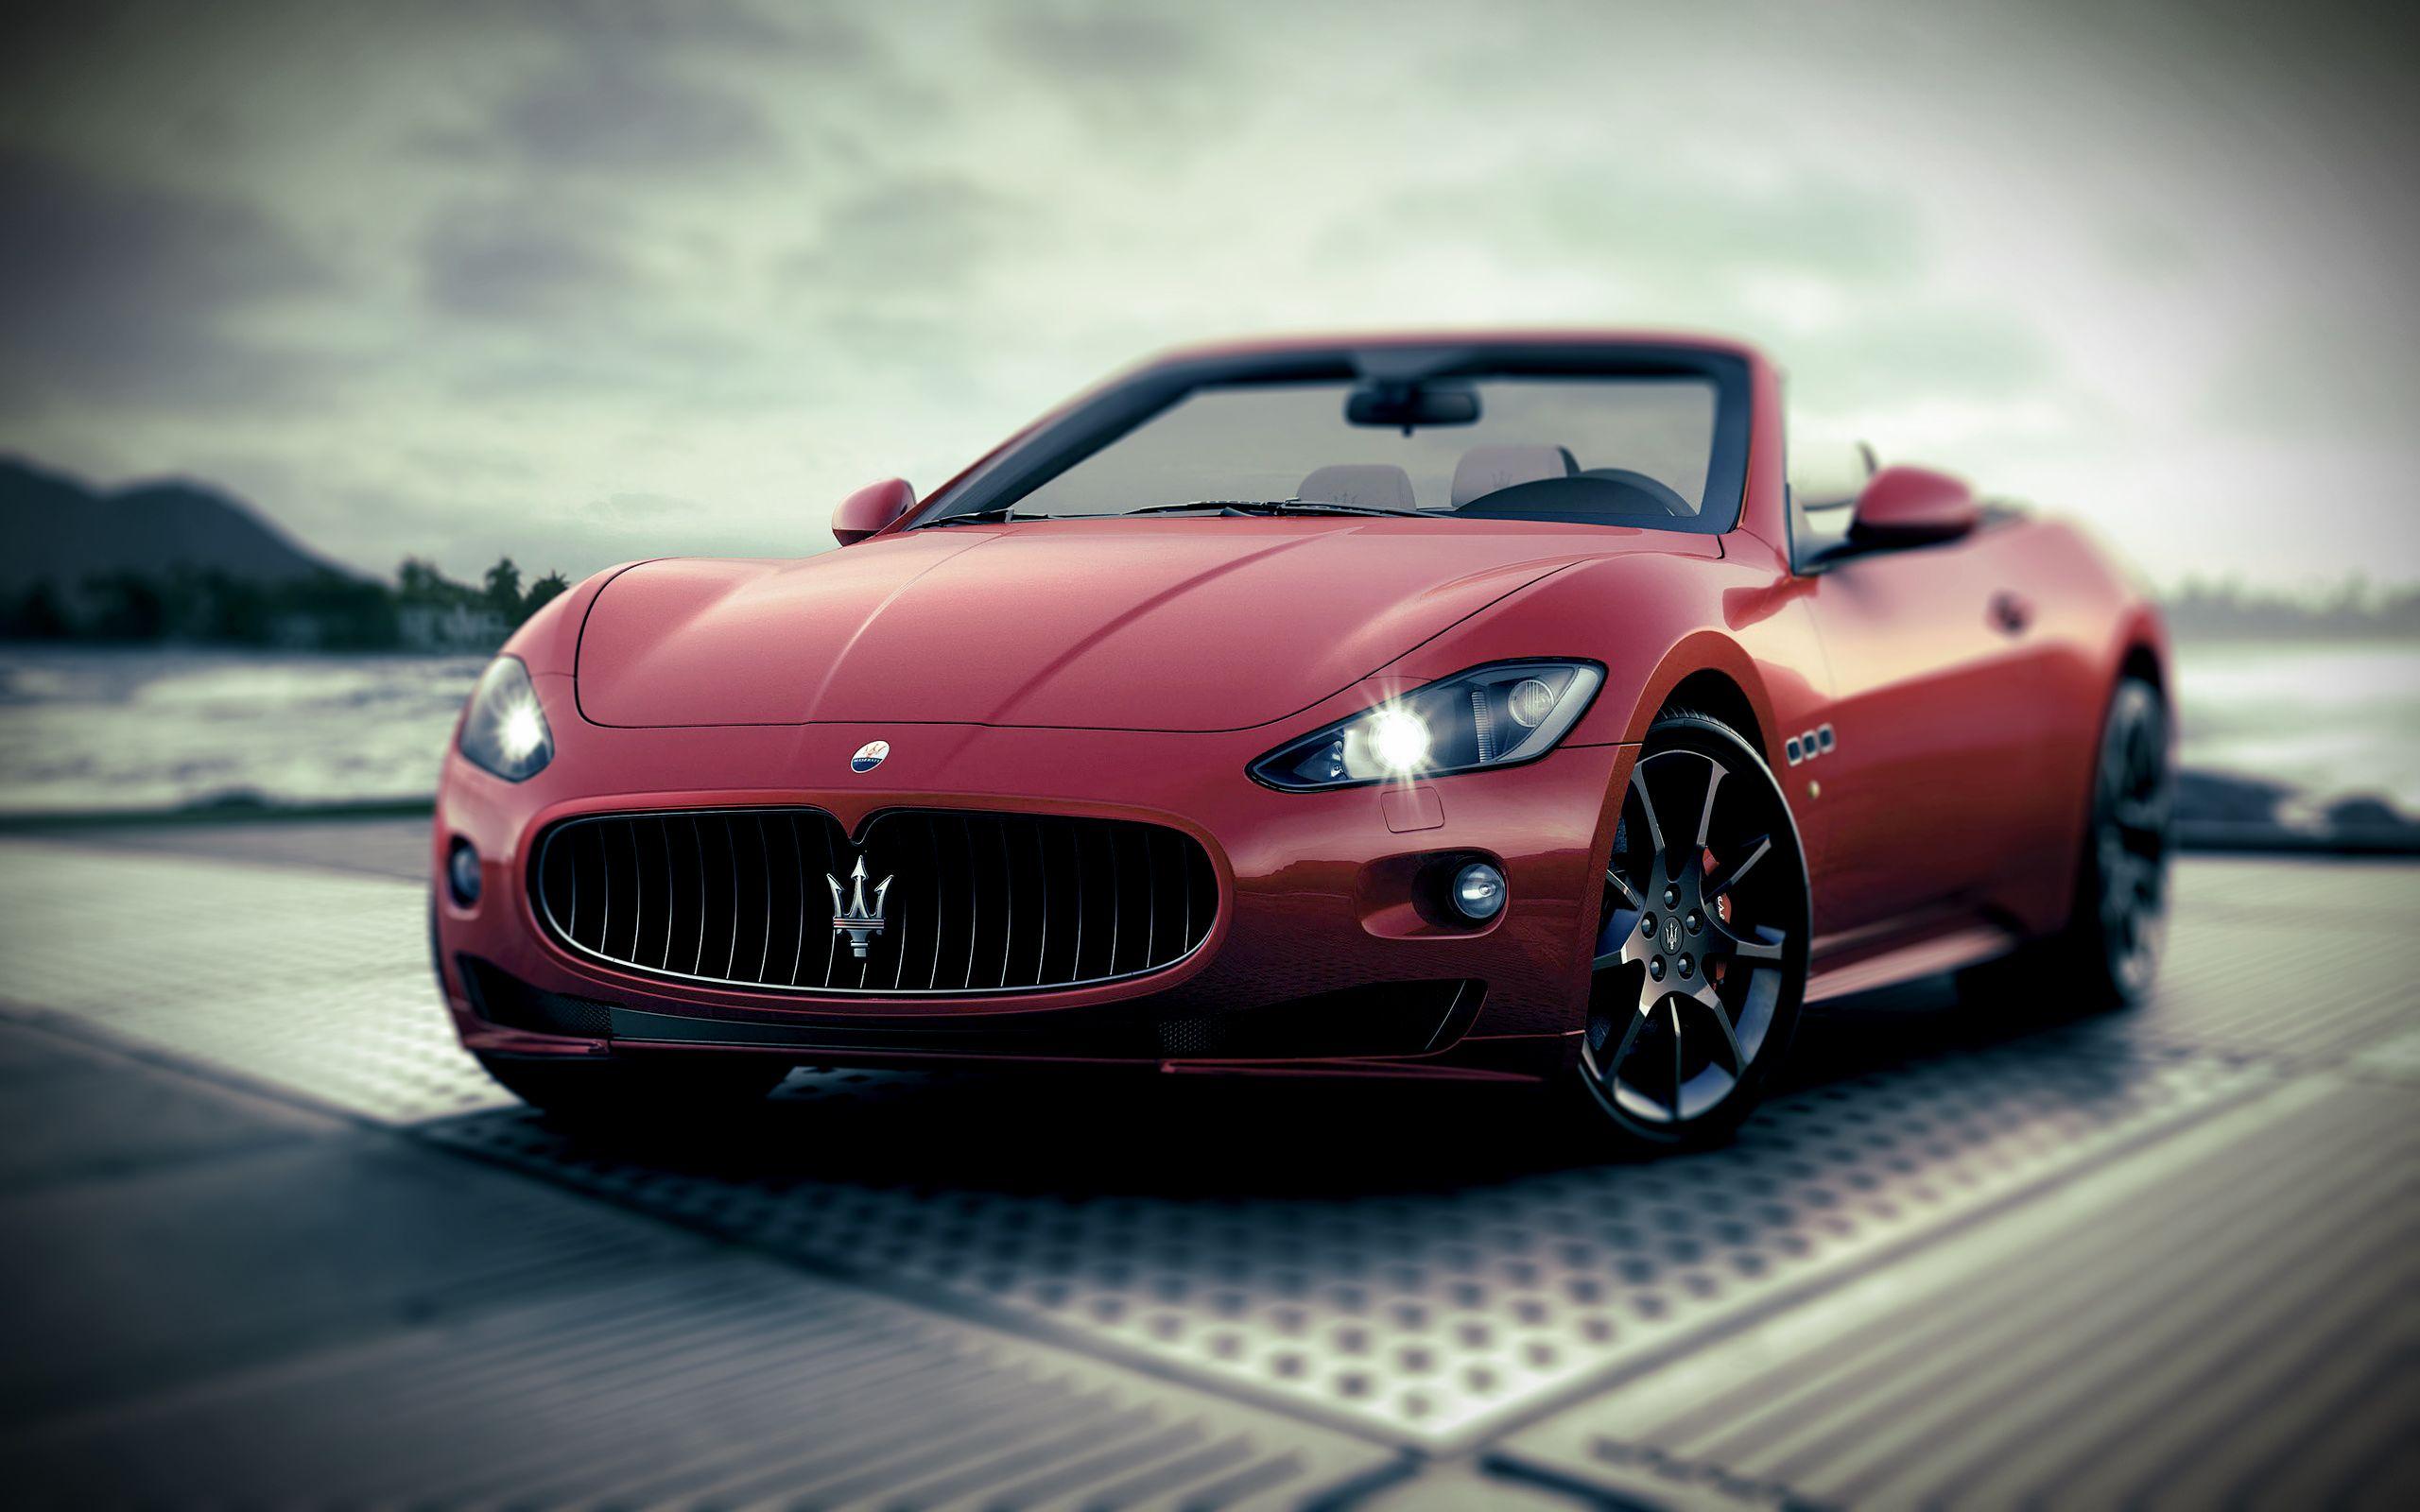 Maserati image maserati HD wallpaper and background photo